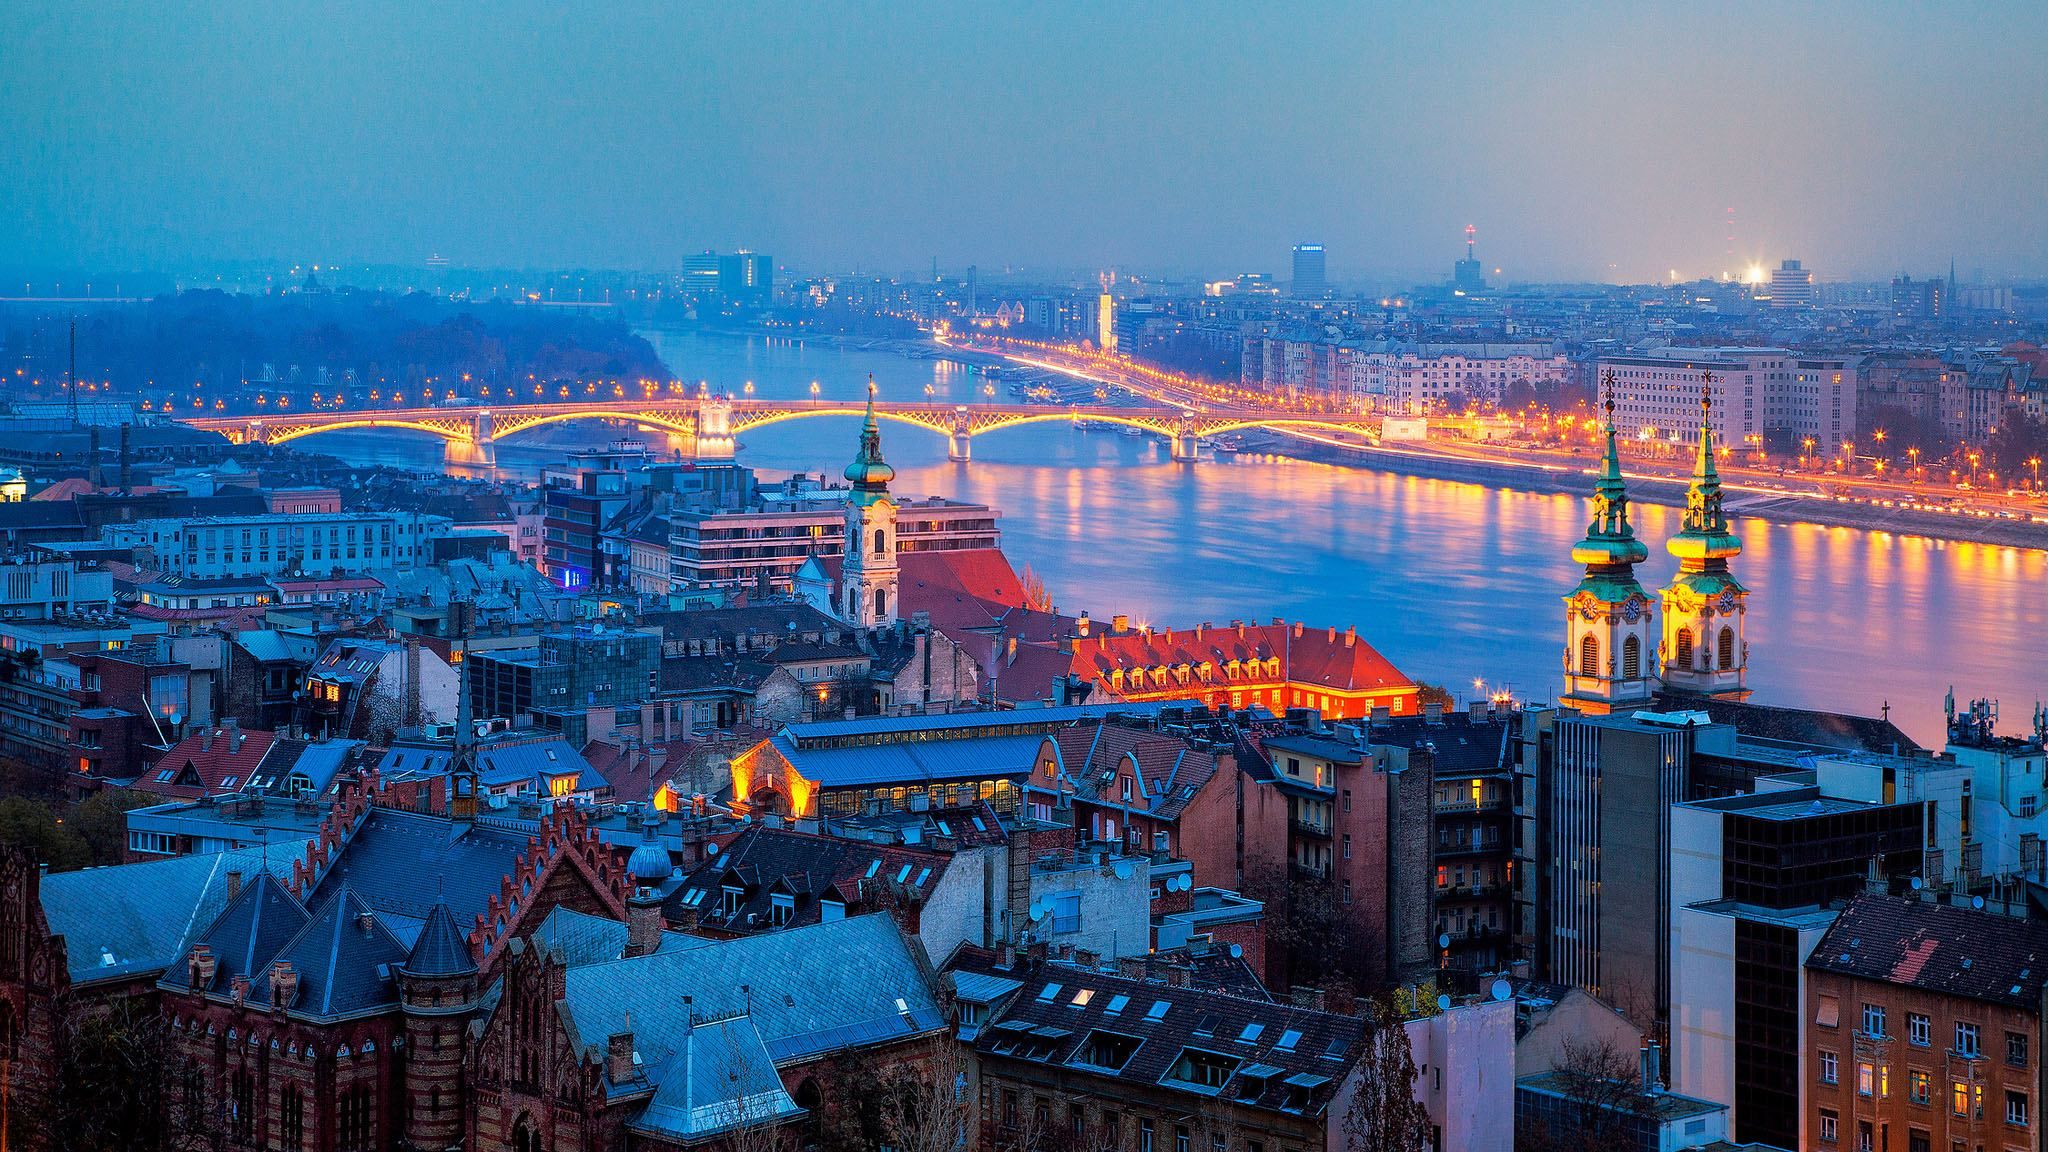 Будапешт – тисячолітнє місто королів та замків на берегах Дунаю